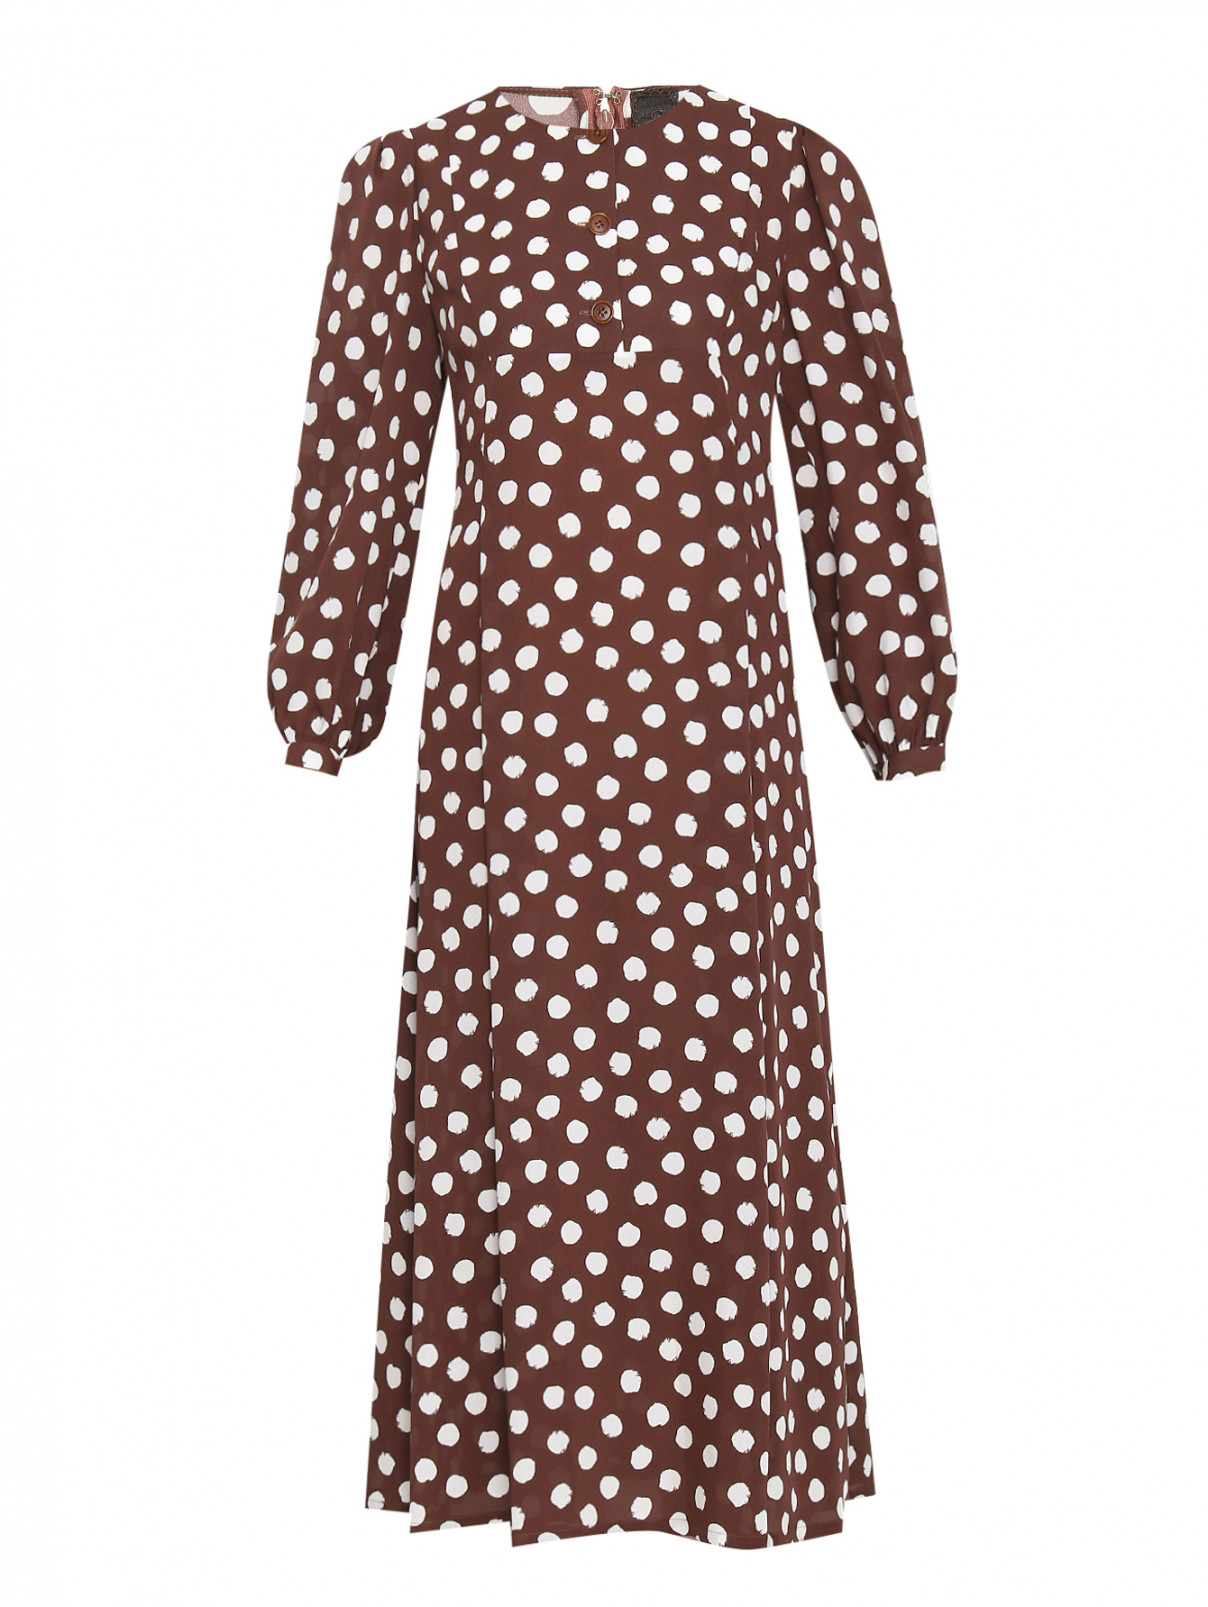 Платье из шелка с узором Ulyana Sergeenko  –  Общий вид  – Цвет:  Коричневый